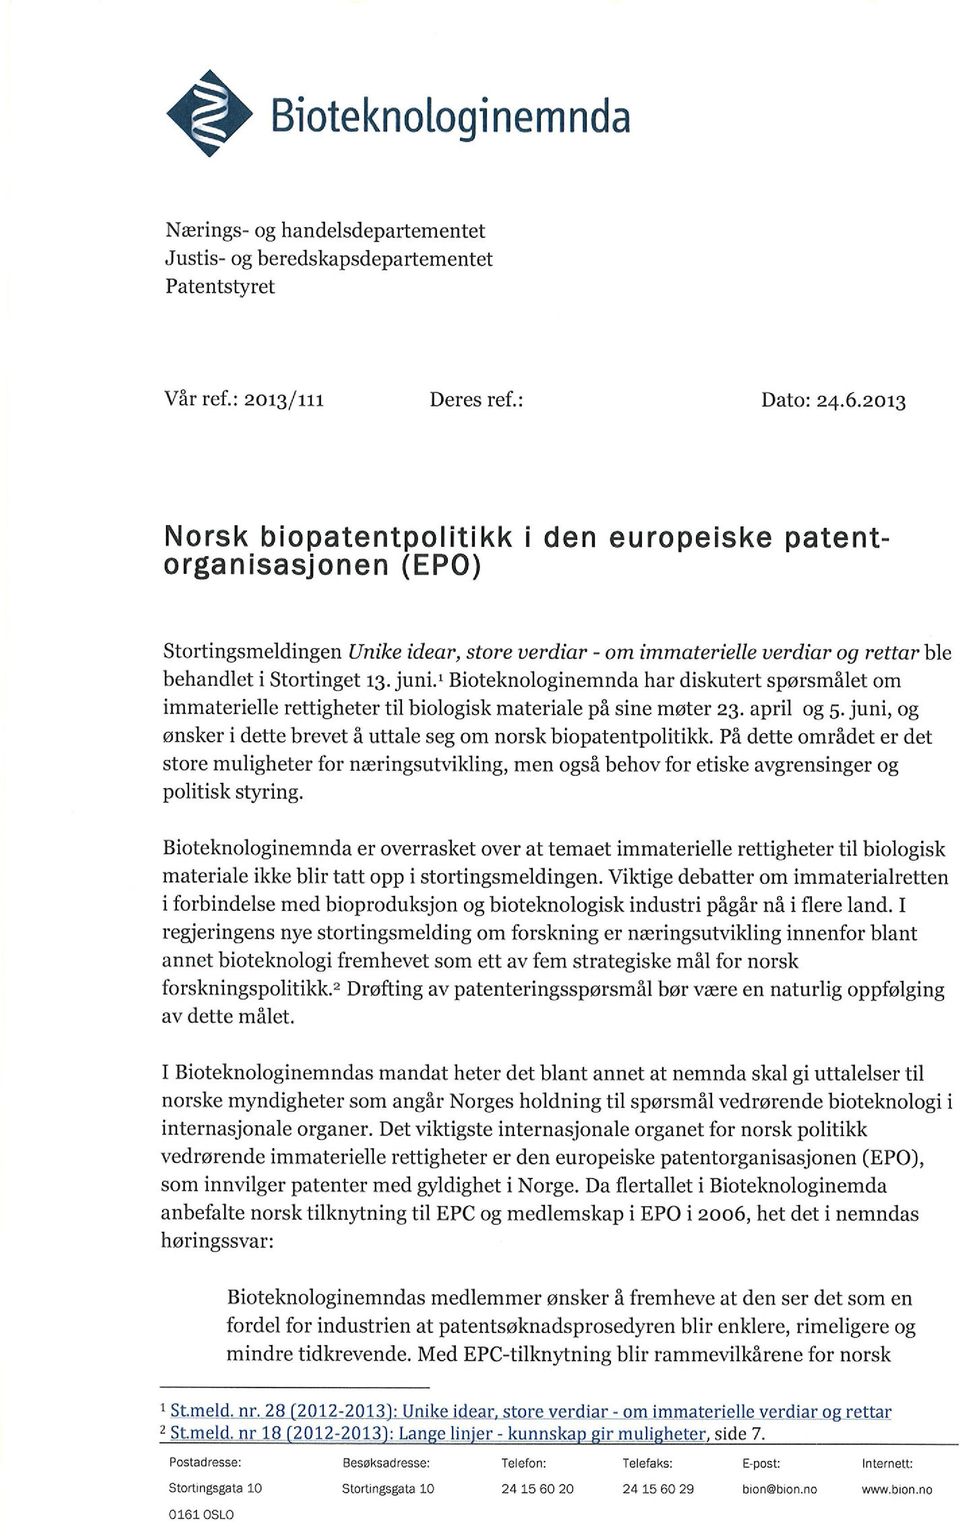 , Bioteknologinemnda har diskutert spørsmålet om immaterielle rettigheter til biologisk materiale på sine møter 23. april og 5. juni, og ønsker i dette brevet å uttale seg om norsk biopatentpolitikk.